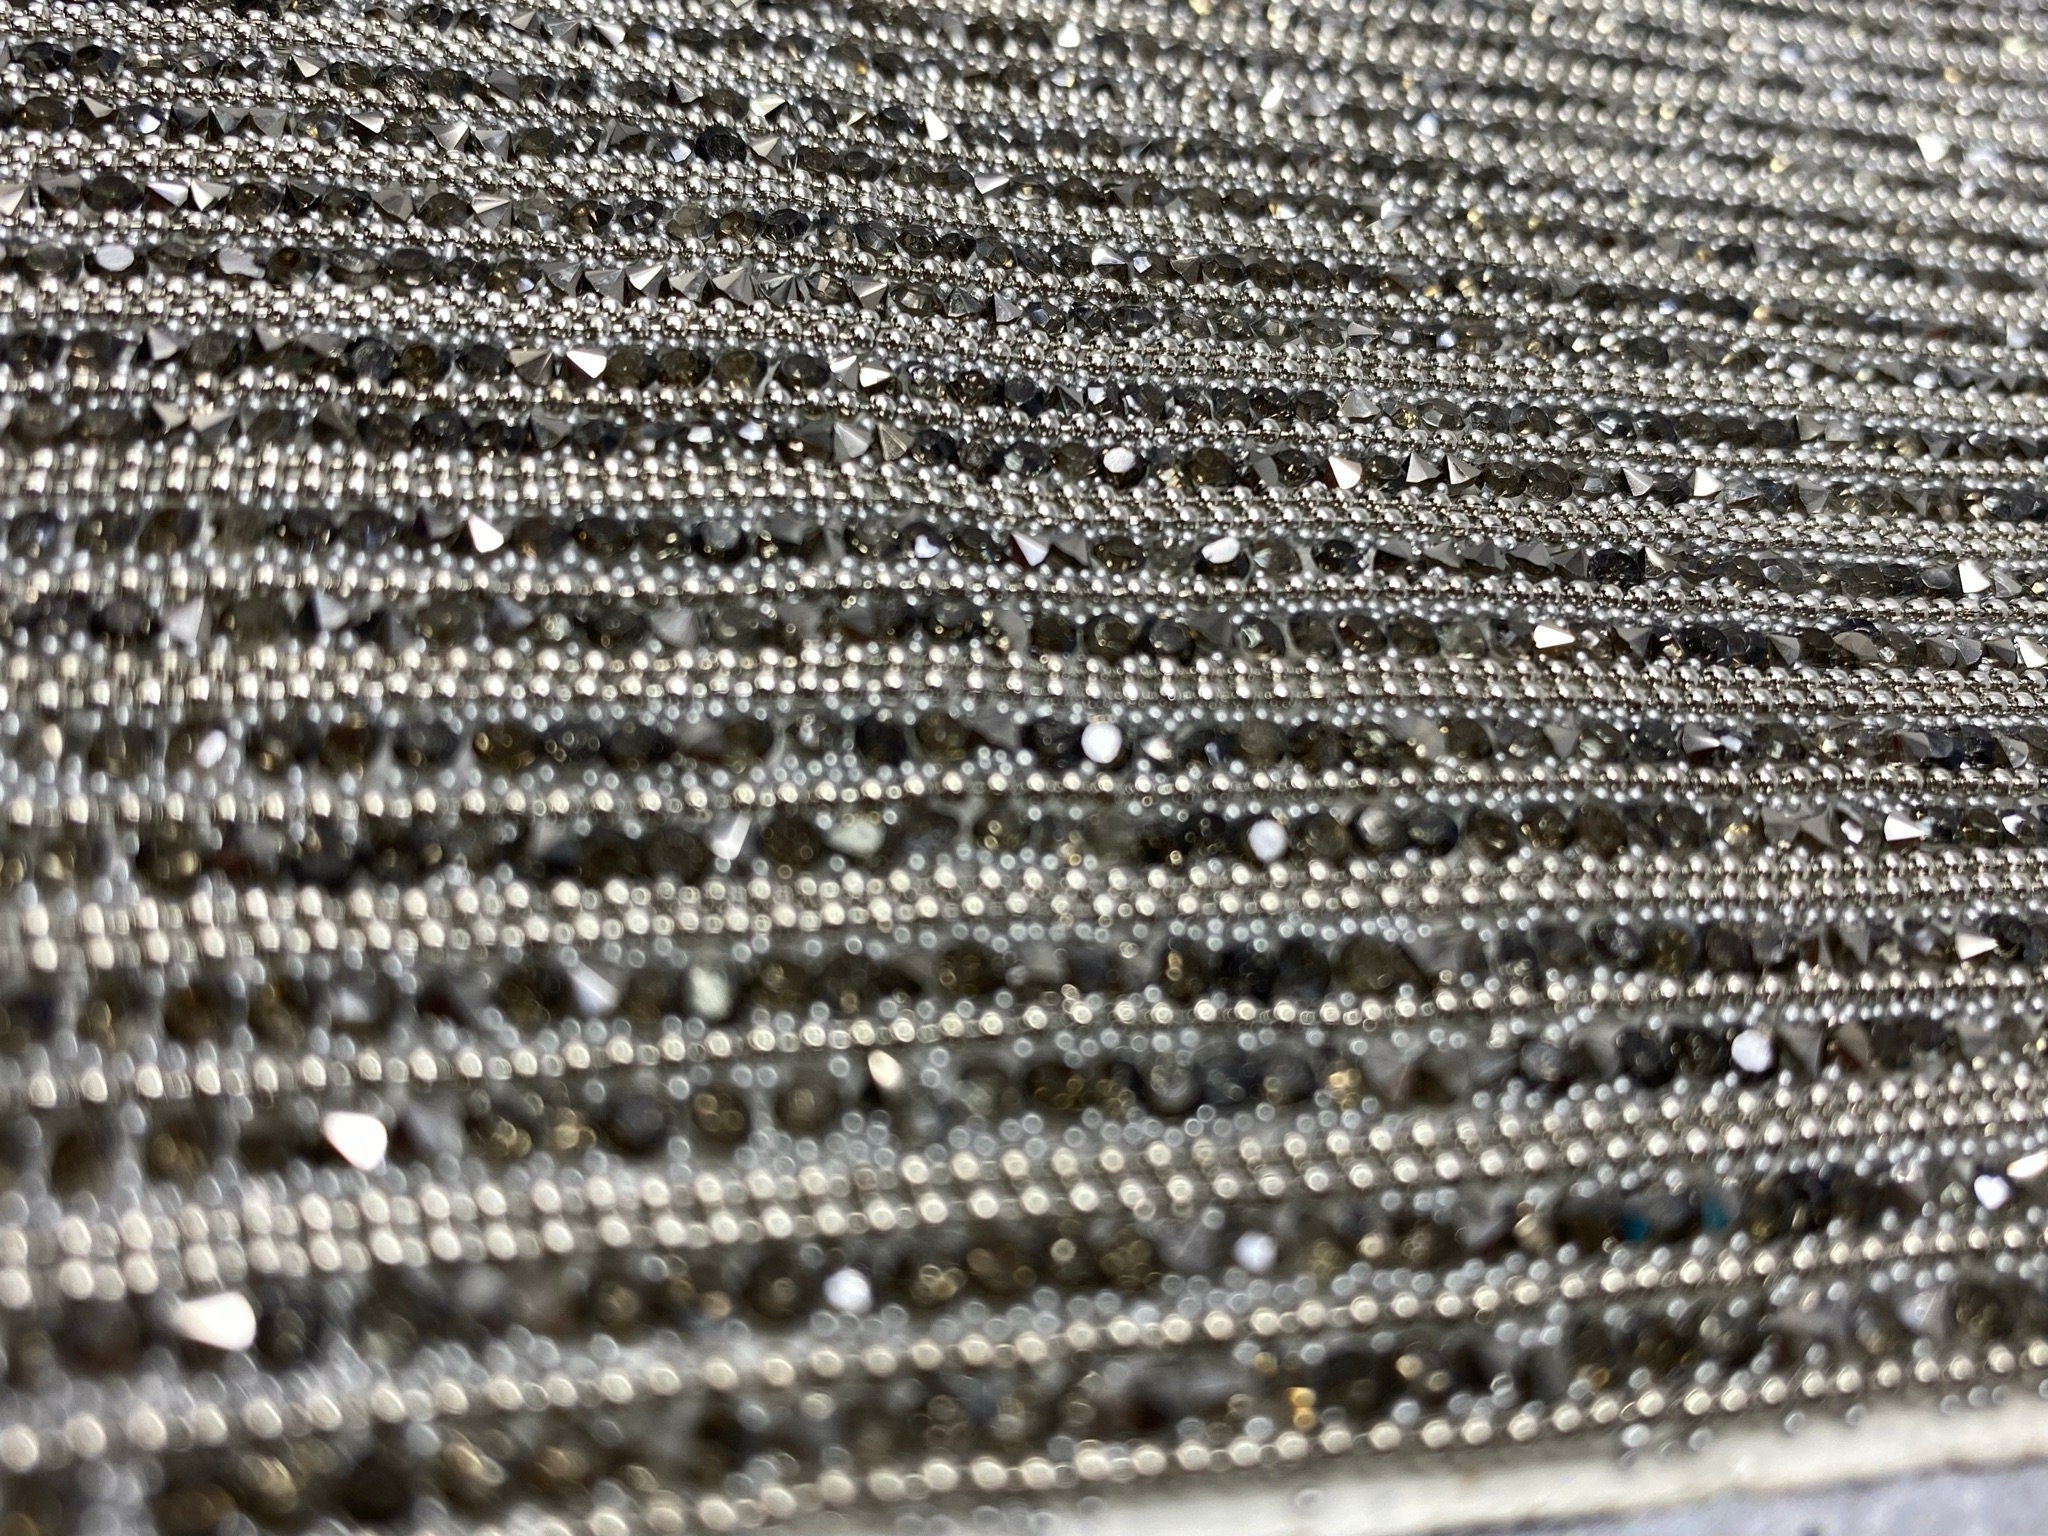 Silver Rhinestone Sheet, Crystal Fabric, Rhinestone Fabric 